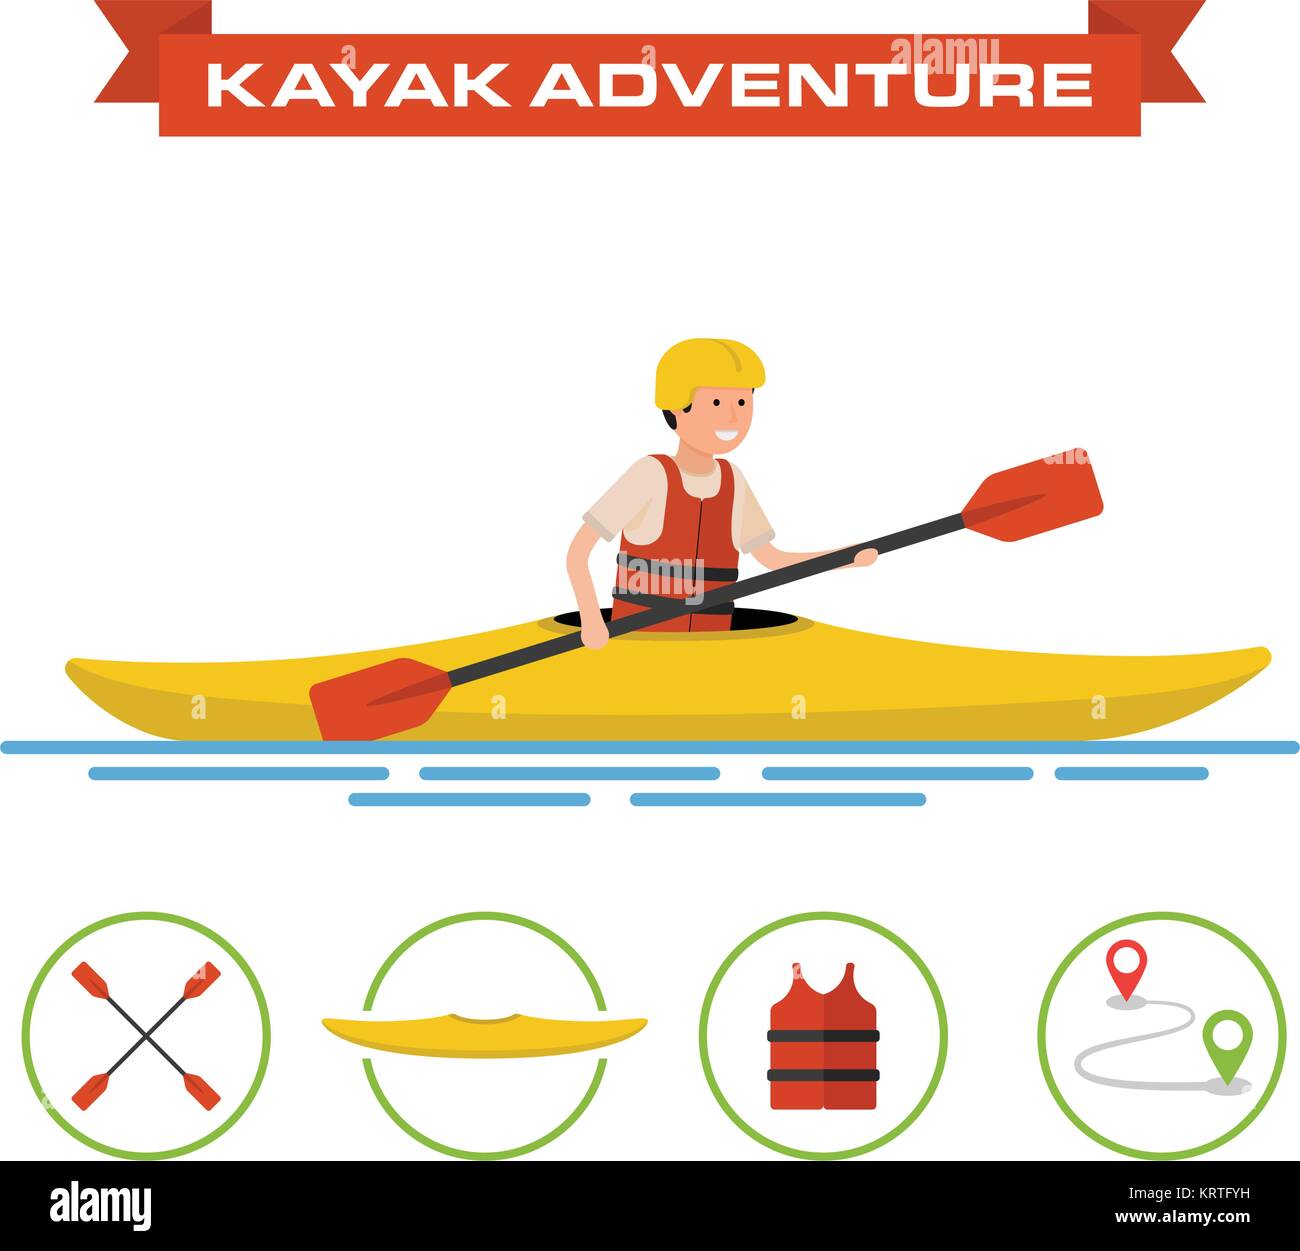 Ilustración vectorial de una historieta kayakista. El hombre conduce el kayak. Además de algunos iconos - lancha de remo, chaleco y ruta Ilustración del Vector